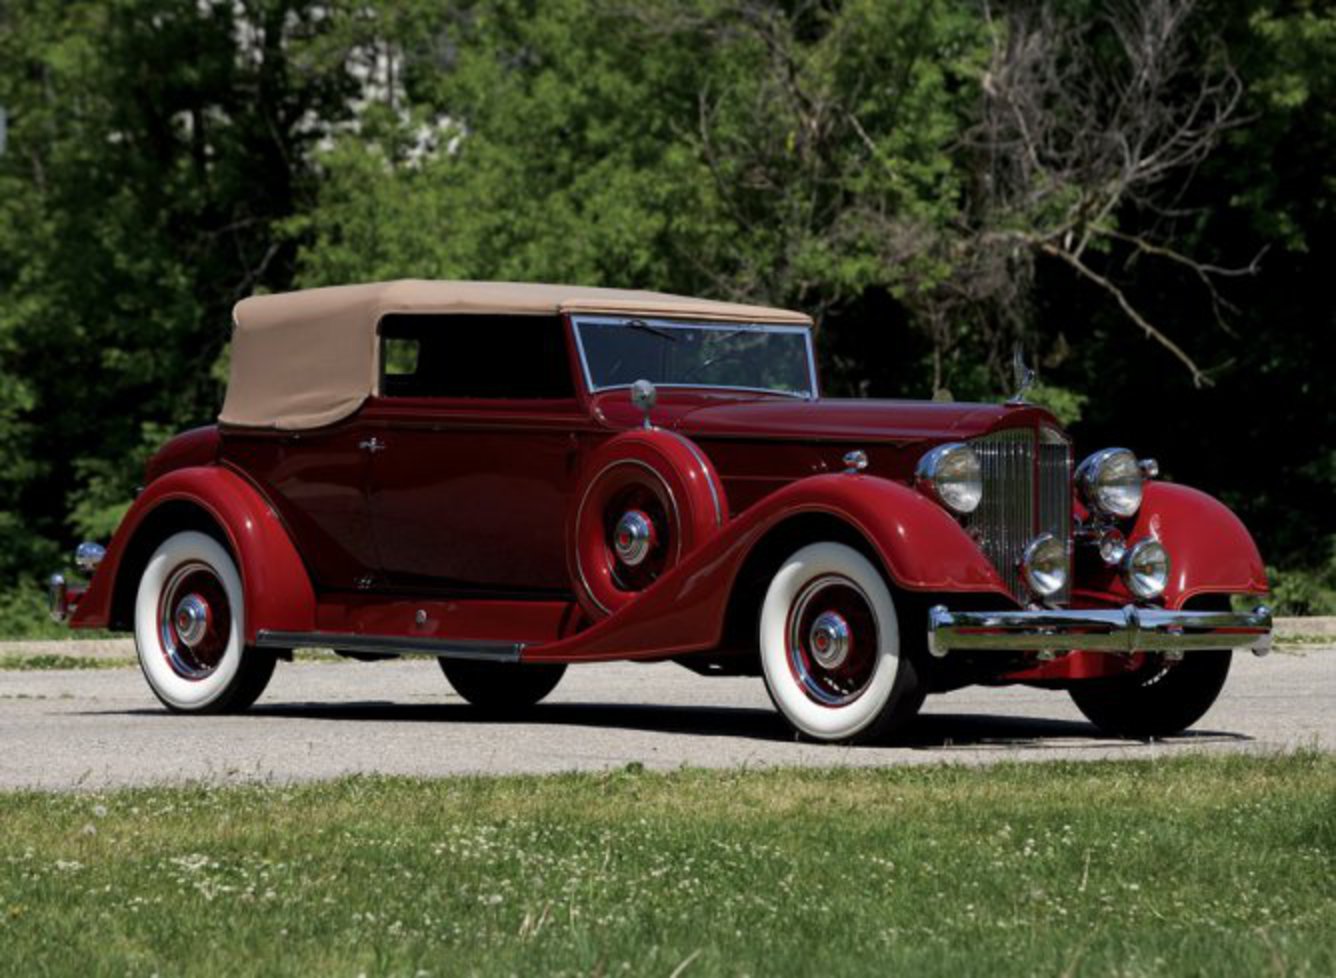 1934 Packard Super Eight Convertible Victoria â€” Ð¤Ð¾Ñ‚Ð¾Ð³Ñ€Ð°Ñ„Ð¸Ð¸ Ð¸Ð· ...